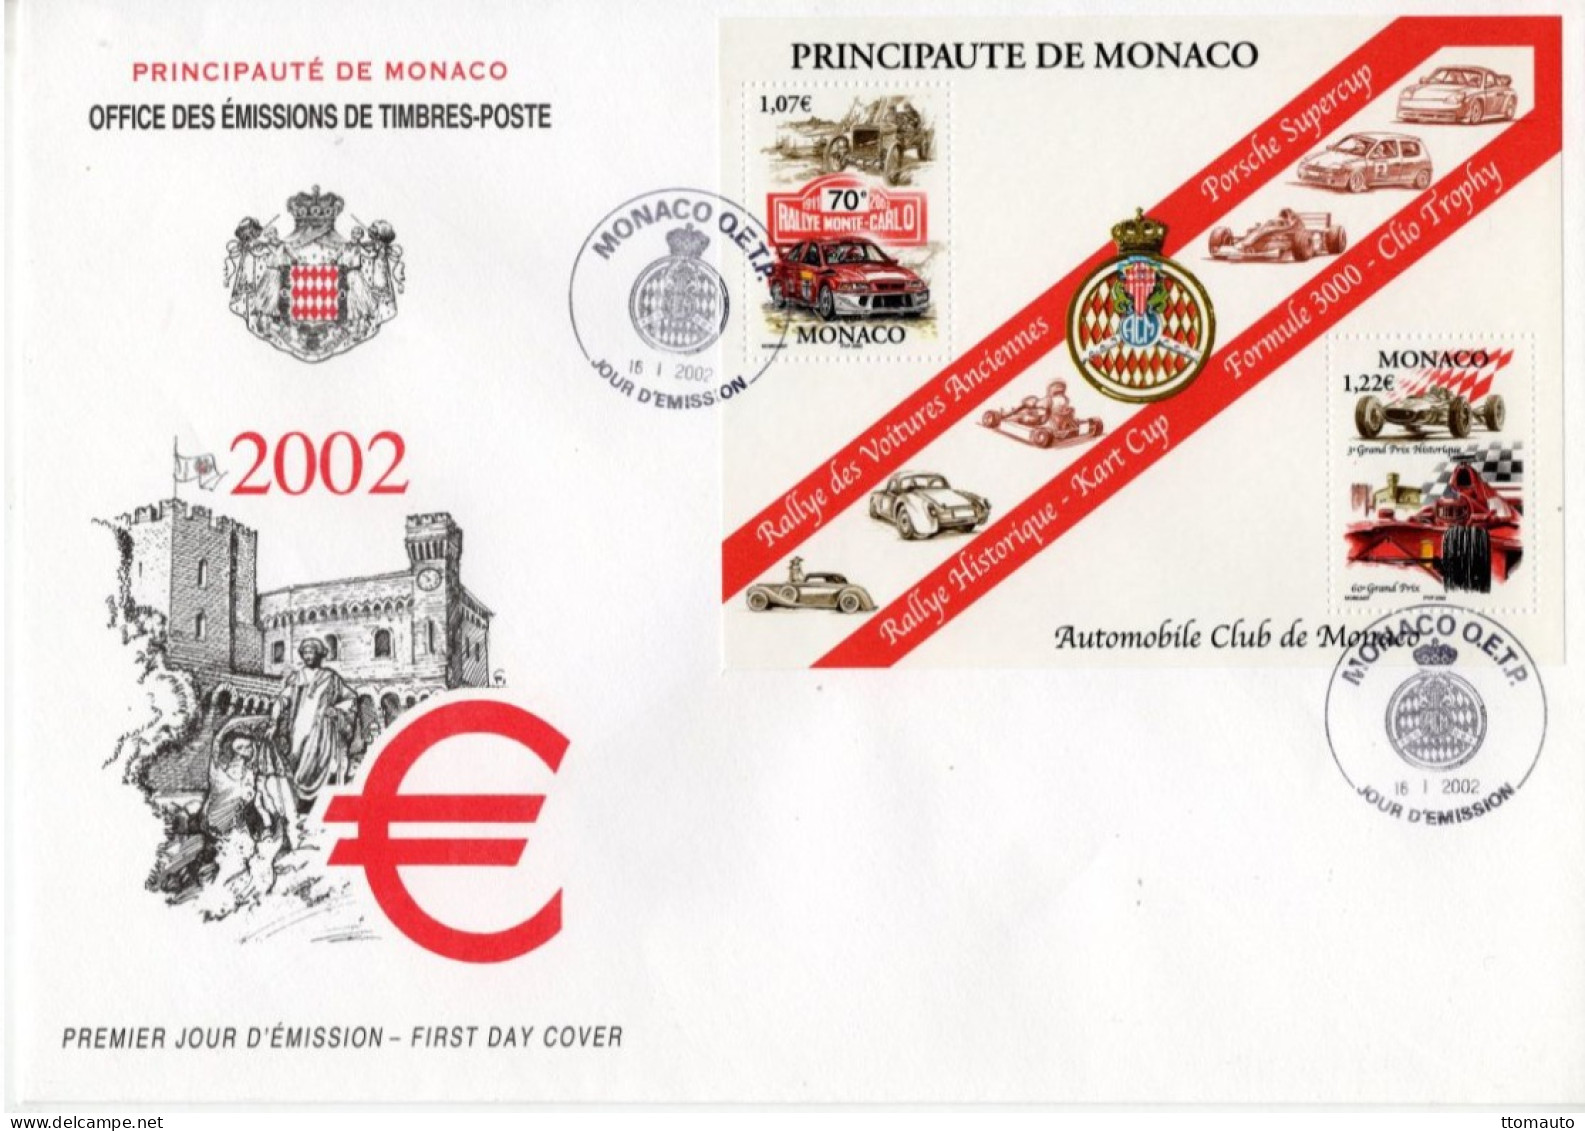 Automobile Club De Monaco - Rallye-Porsche-Kart-Clio-F3000 - Monaco 2v MS Envelope FDC - Prémier Jour D'Emission - Automobilismo